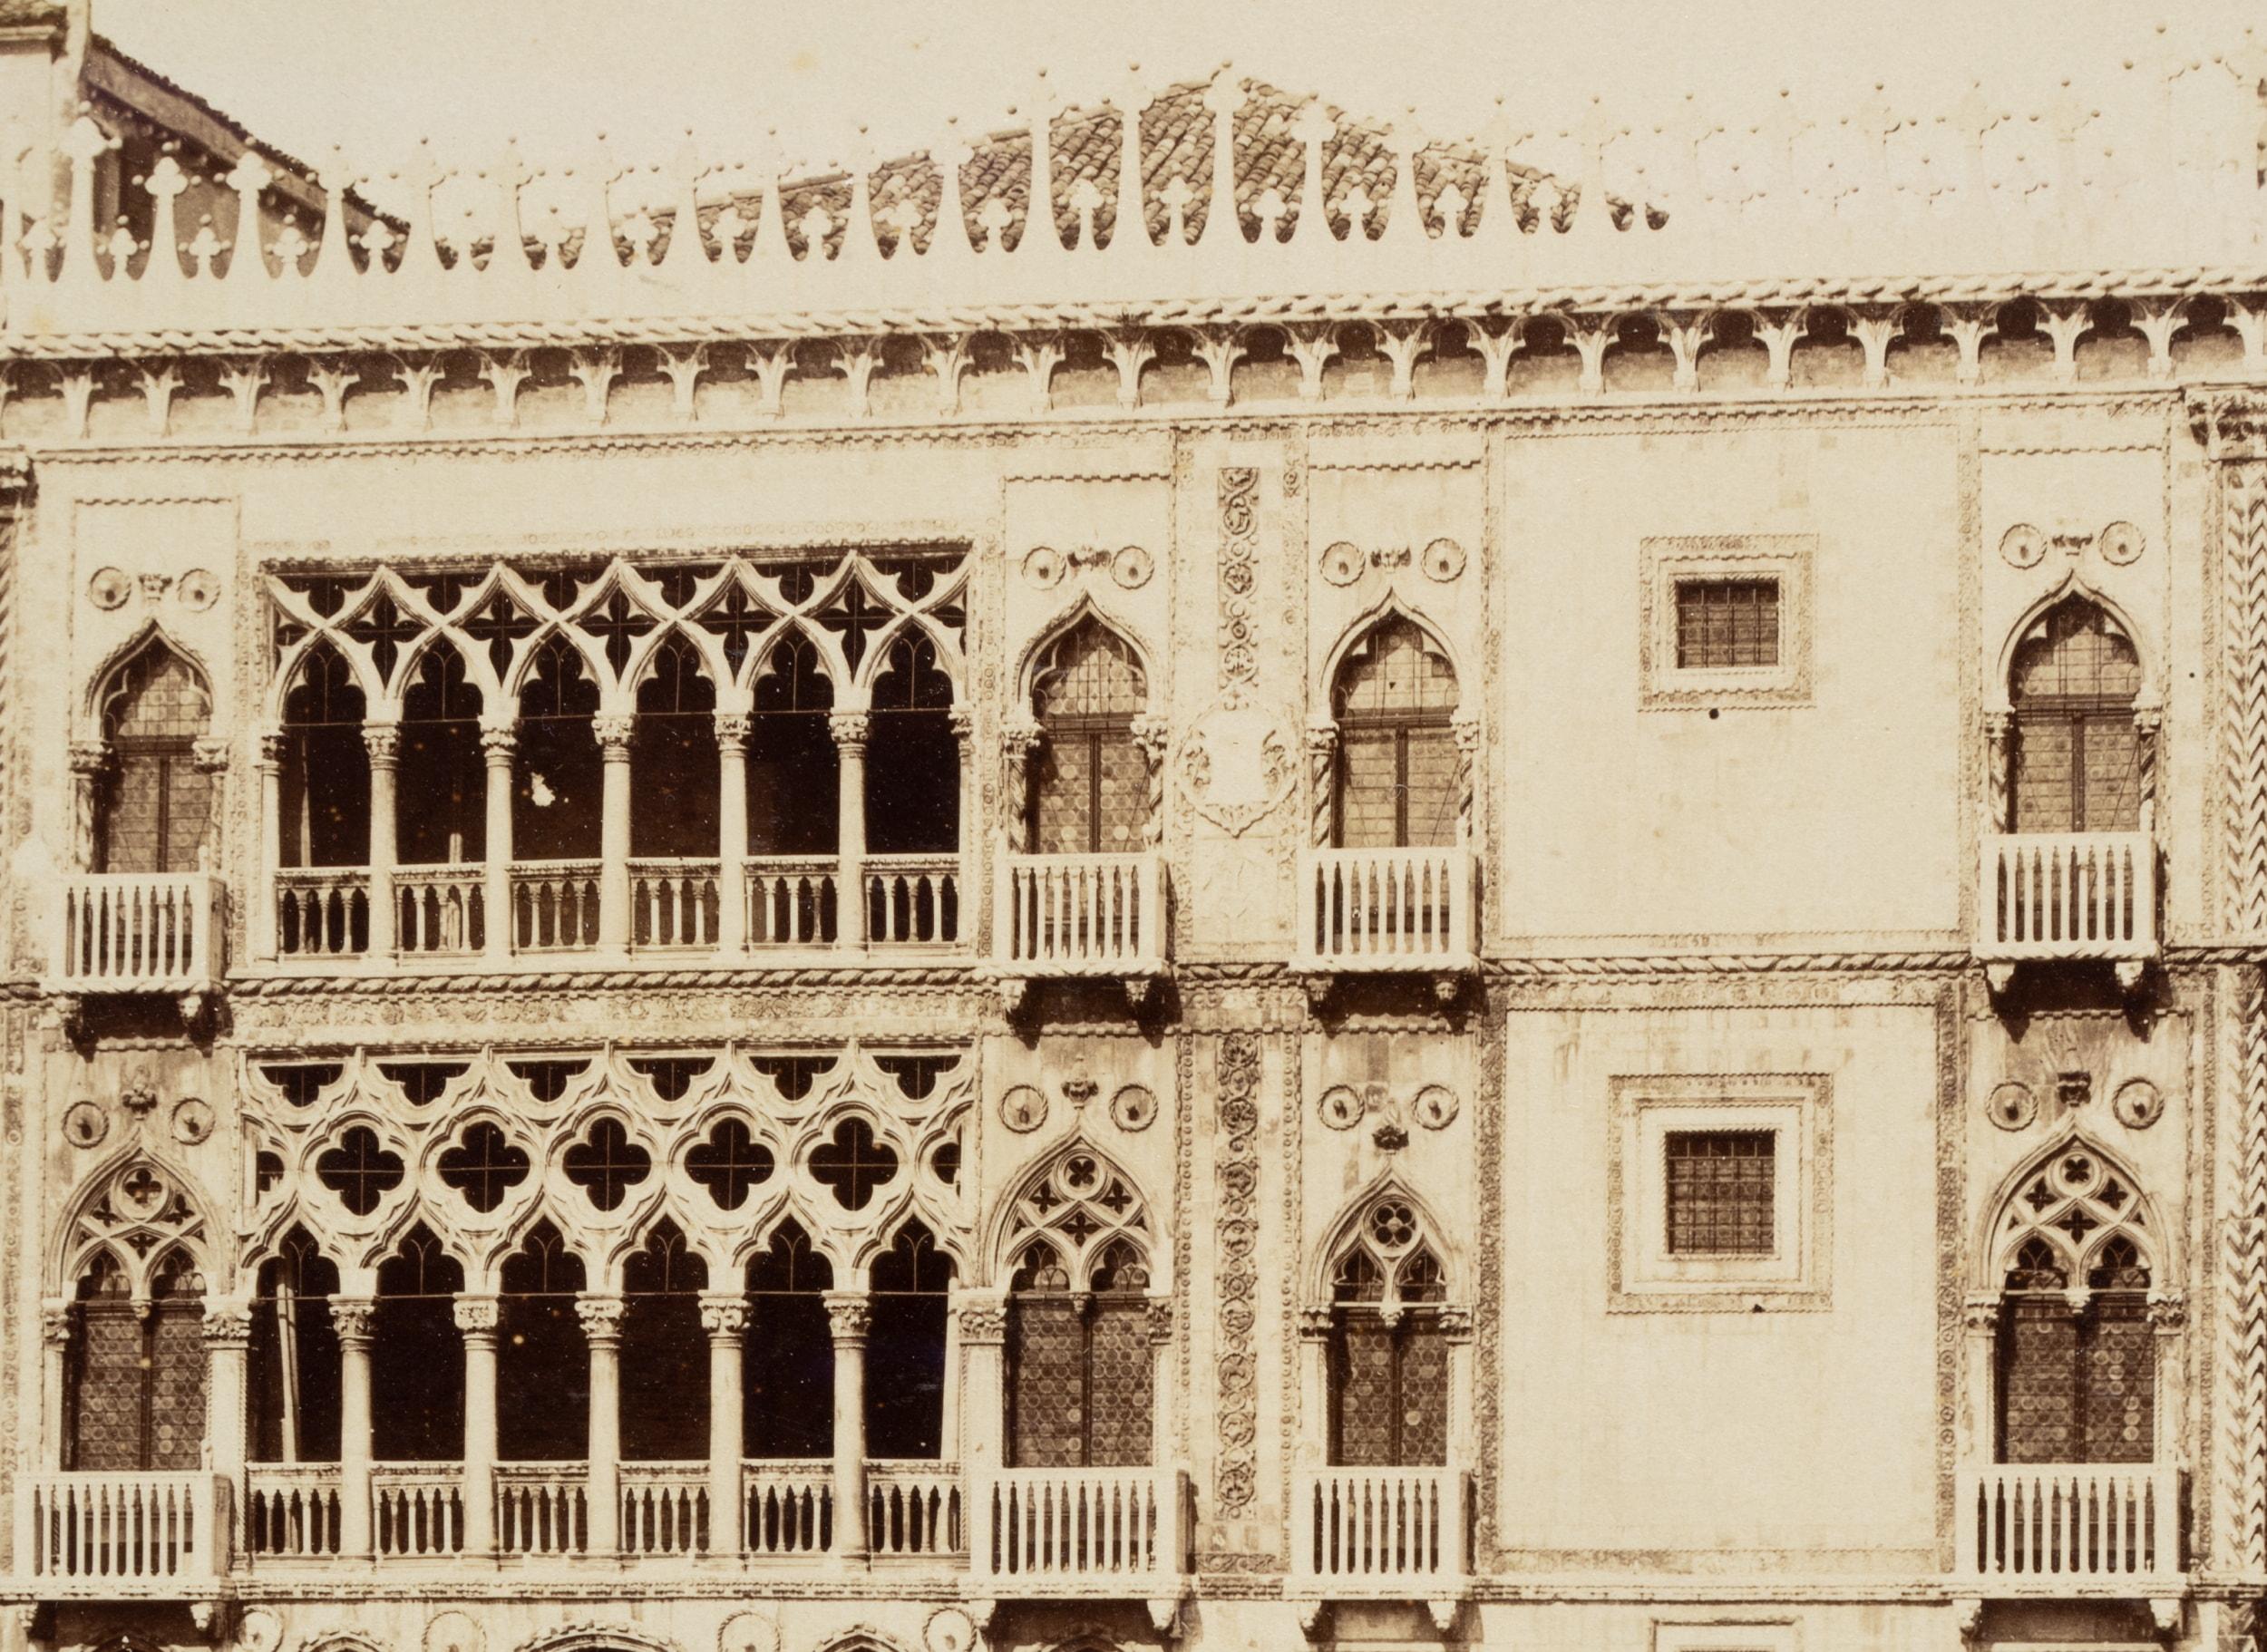 Fratelli Alinari (19. Jahrhundert) Kreis: Ansicht des Palazzos Casa d'Oro am Canal Grande Venedig, um 1880, Albumenpapierabzug

Technik: Albuminpapierabzug, aufgezogen auf Pappe

Inschrift: Unten in der Mitte auf dem Träger eingraviert: 